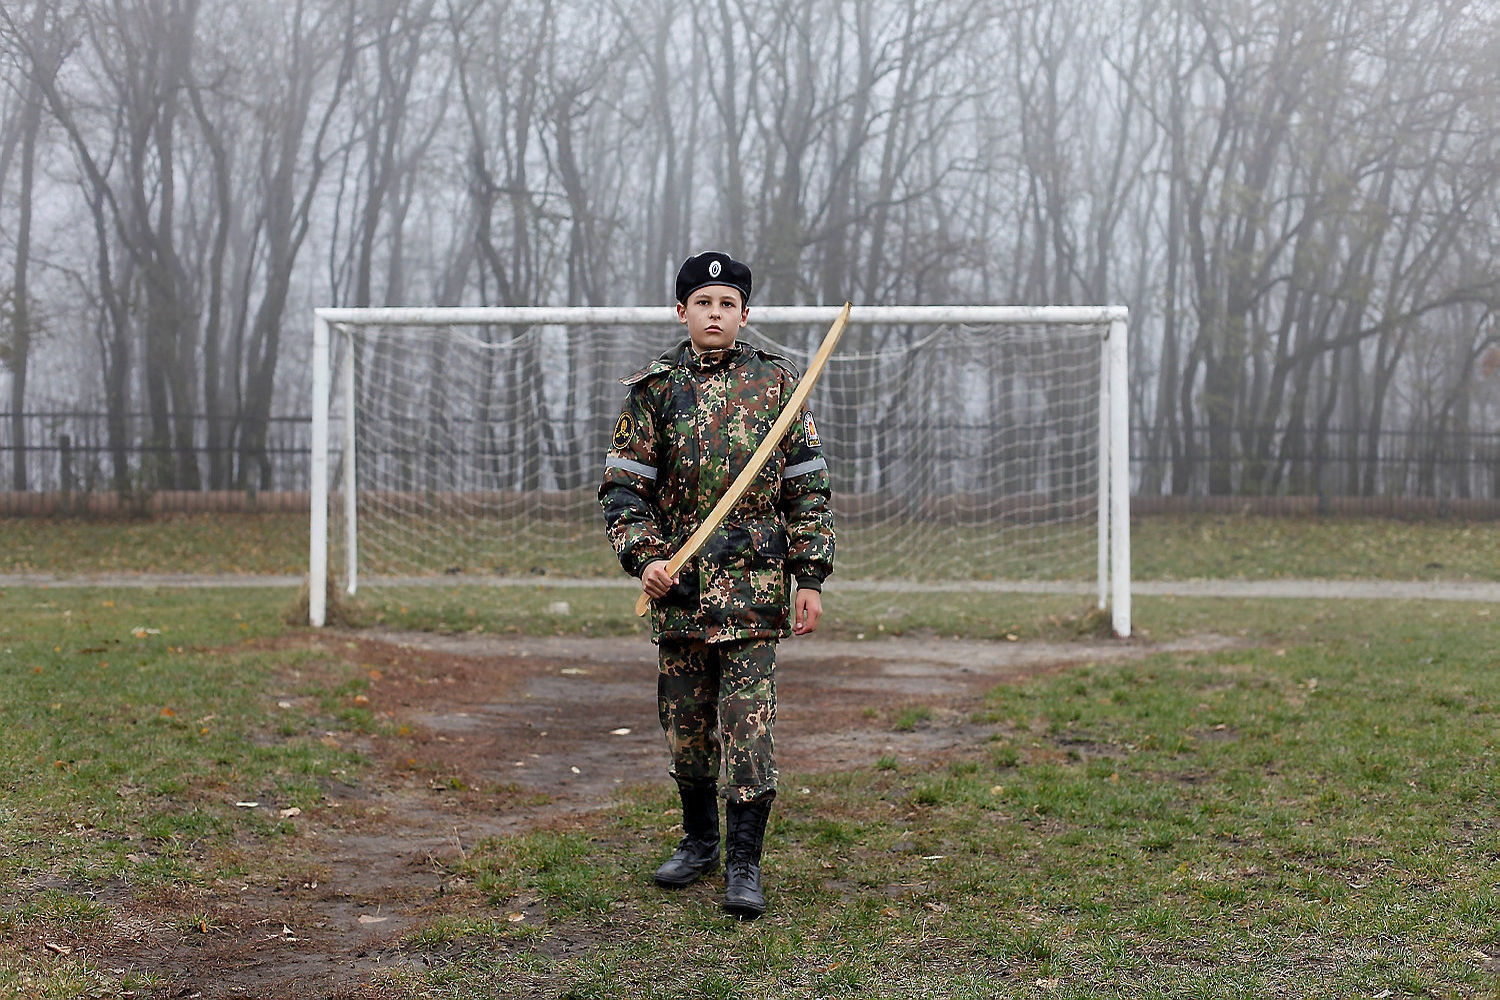 Un cadet sosté un model d’espasa davant d’una porteria de futbol mentre efectua els seus exercicis militars a l’estadi de l’Escola General del Cadet de Ièrmolov, a Stàvropol, Rússia, el novembre passat / EDUARD KORNIYENKO_REUTERS (Diari Ara)